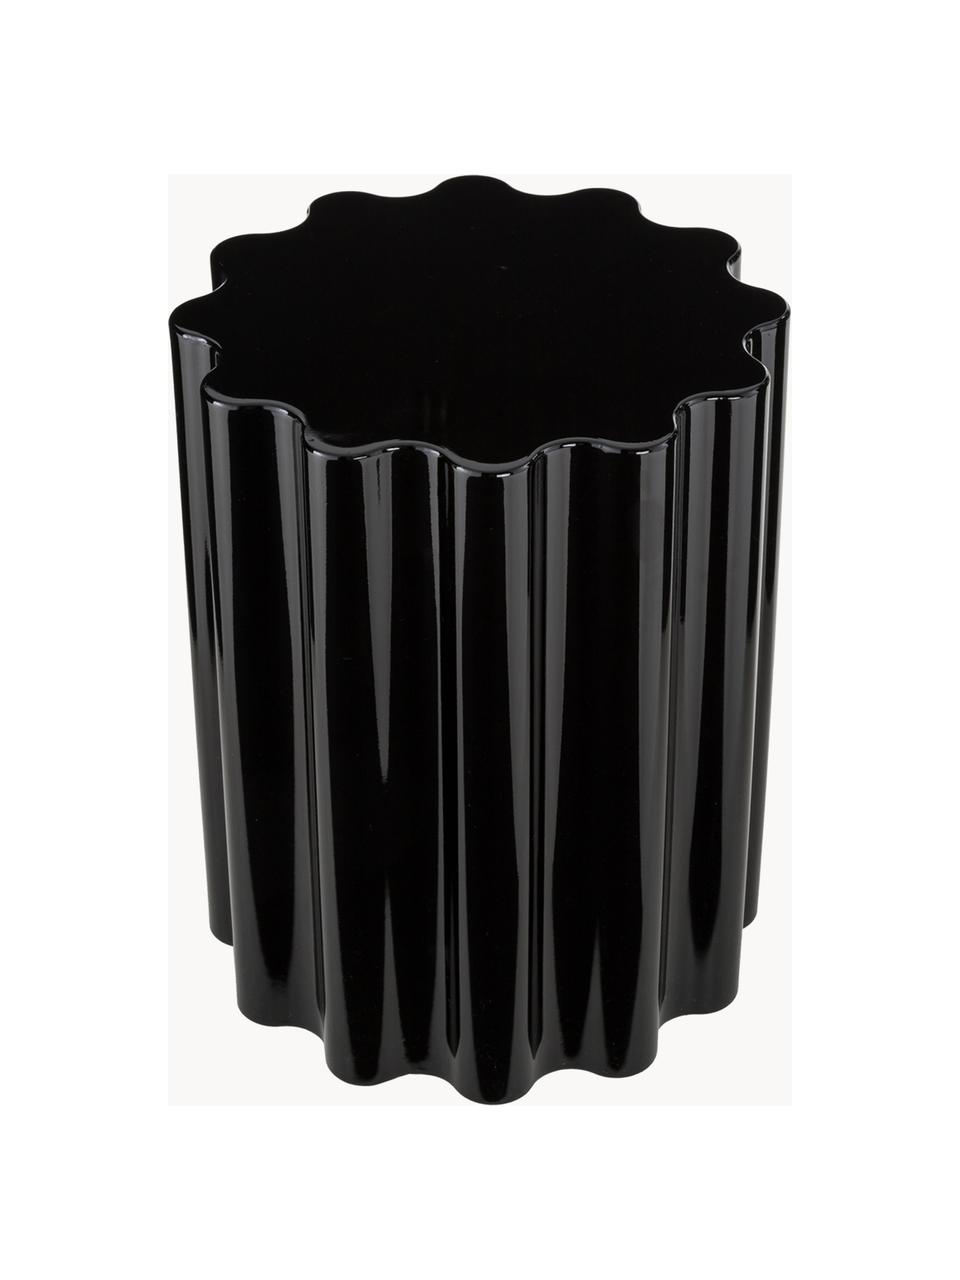 Designová stolička/odkládací stolek Colonna, Pigmentovaná termoplastická umělá hmota, Černá, Ø 35 cm, V 46 cm